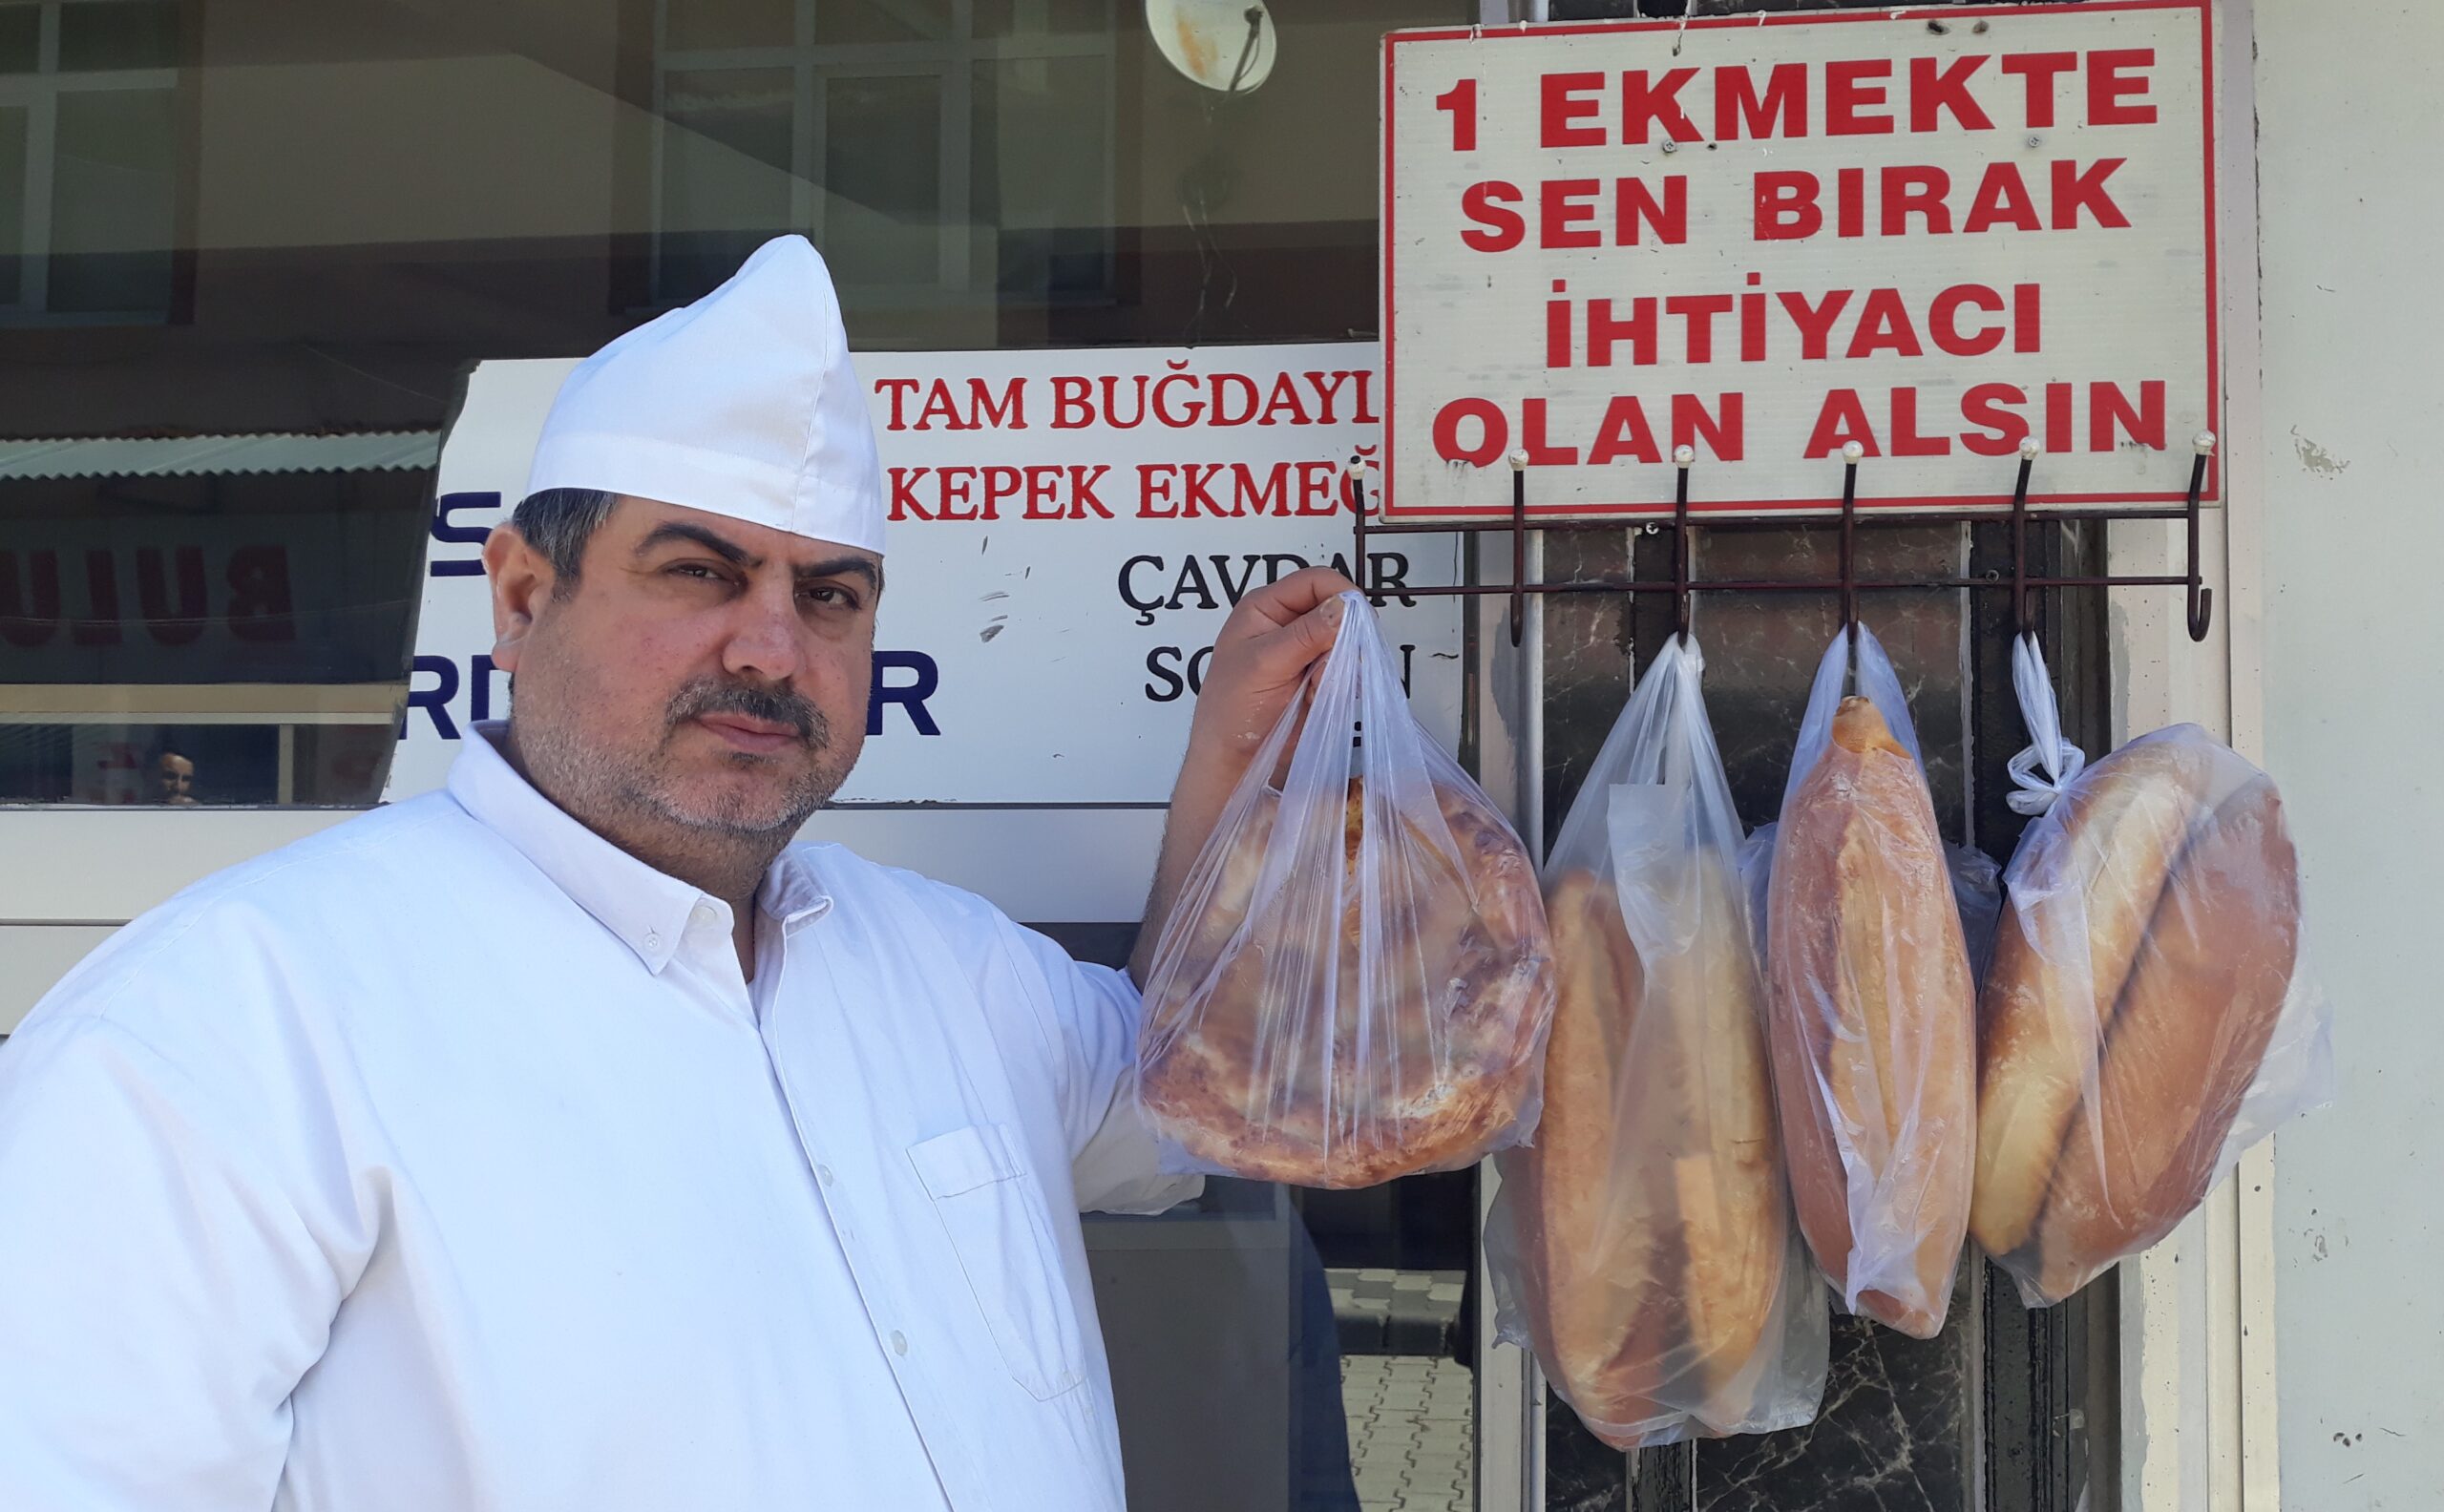 Taşova’da askıda ekmek kampanyası devam ediyor